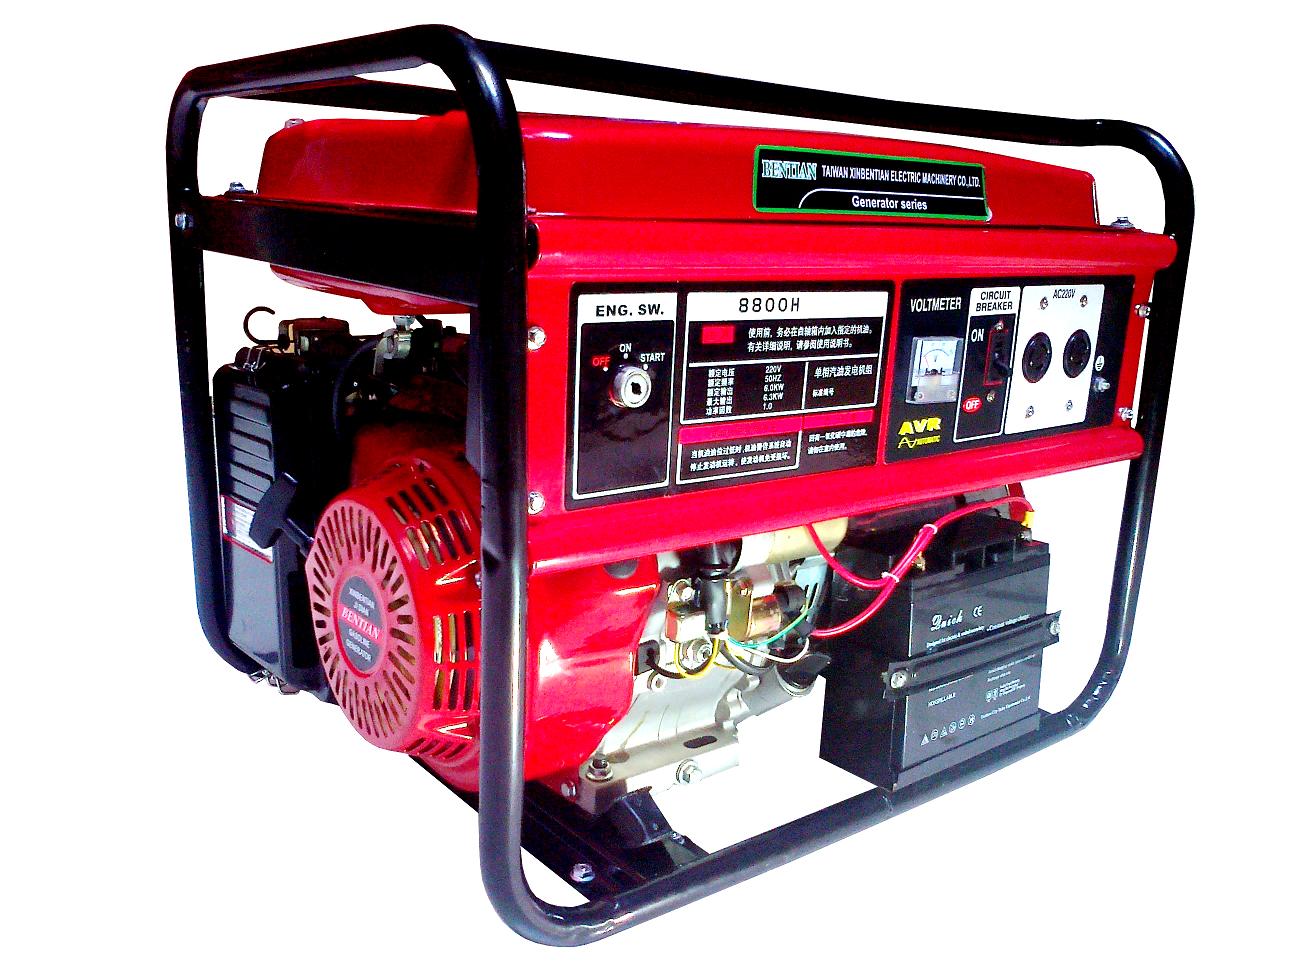 Máy phát điện là thiết bị cần thiết mà các gia đình nên mua để đáp ứng nhu cầu sử dụng trong trường hợp bị ngắt điện